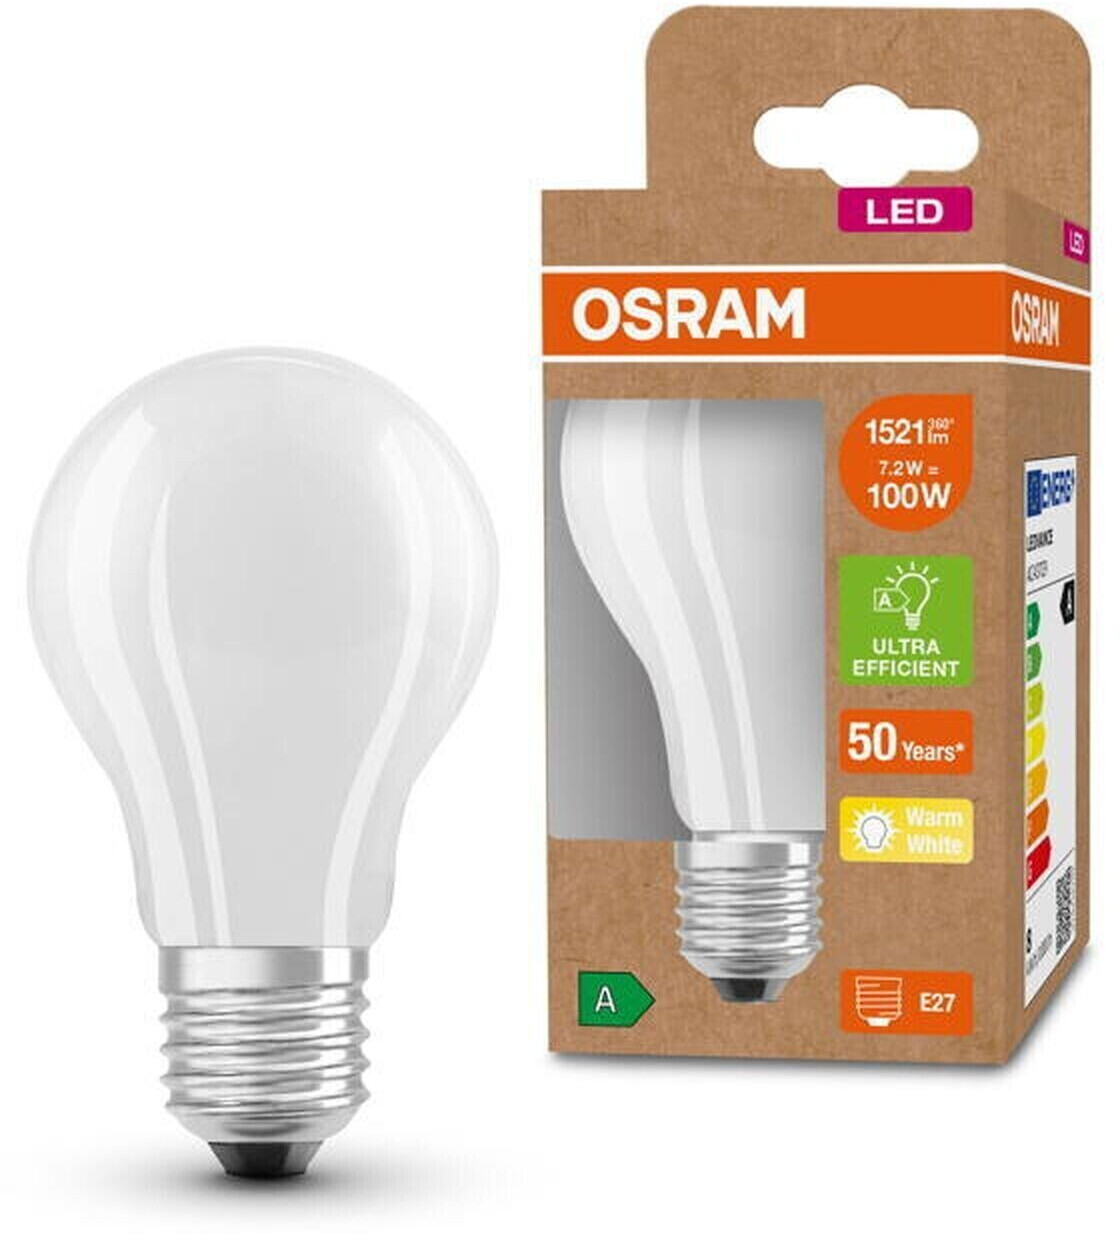 Osram LED Classic A E27 7,2W/1521lm 3000K (AC43729) a € 12,98